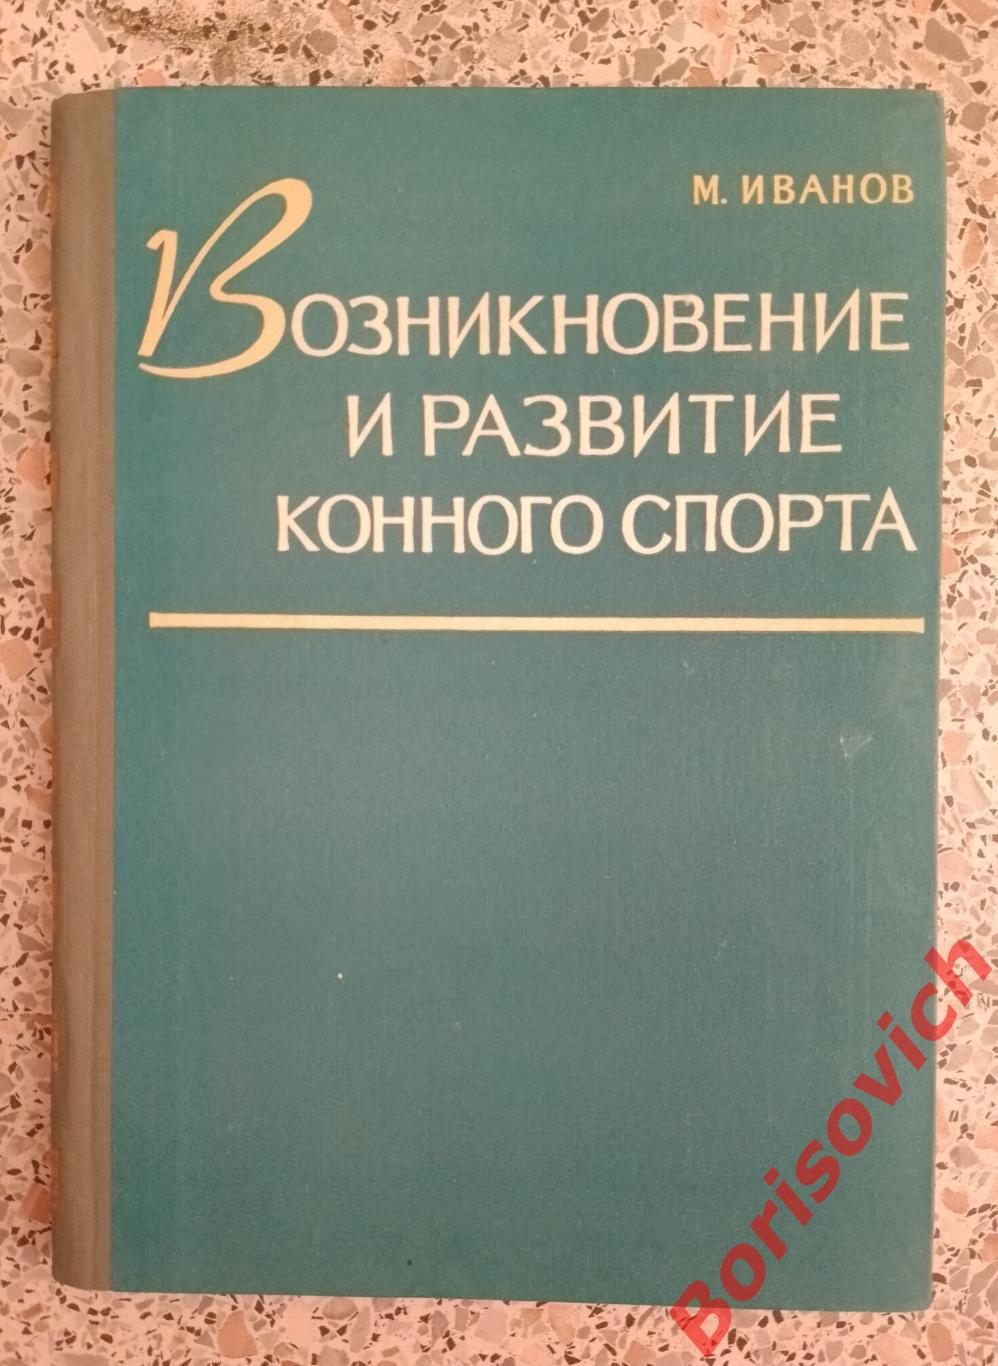 М. Иванов ВОЗНИКНОВЕНИЕ И РАЗВИТИЕ КОННОГО СПОРТА 1960 г 164 страницы